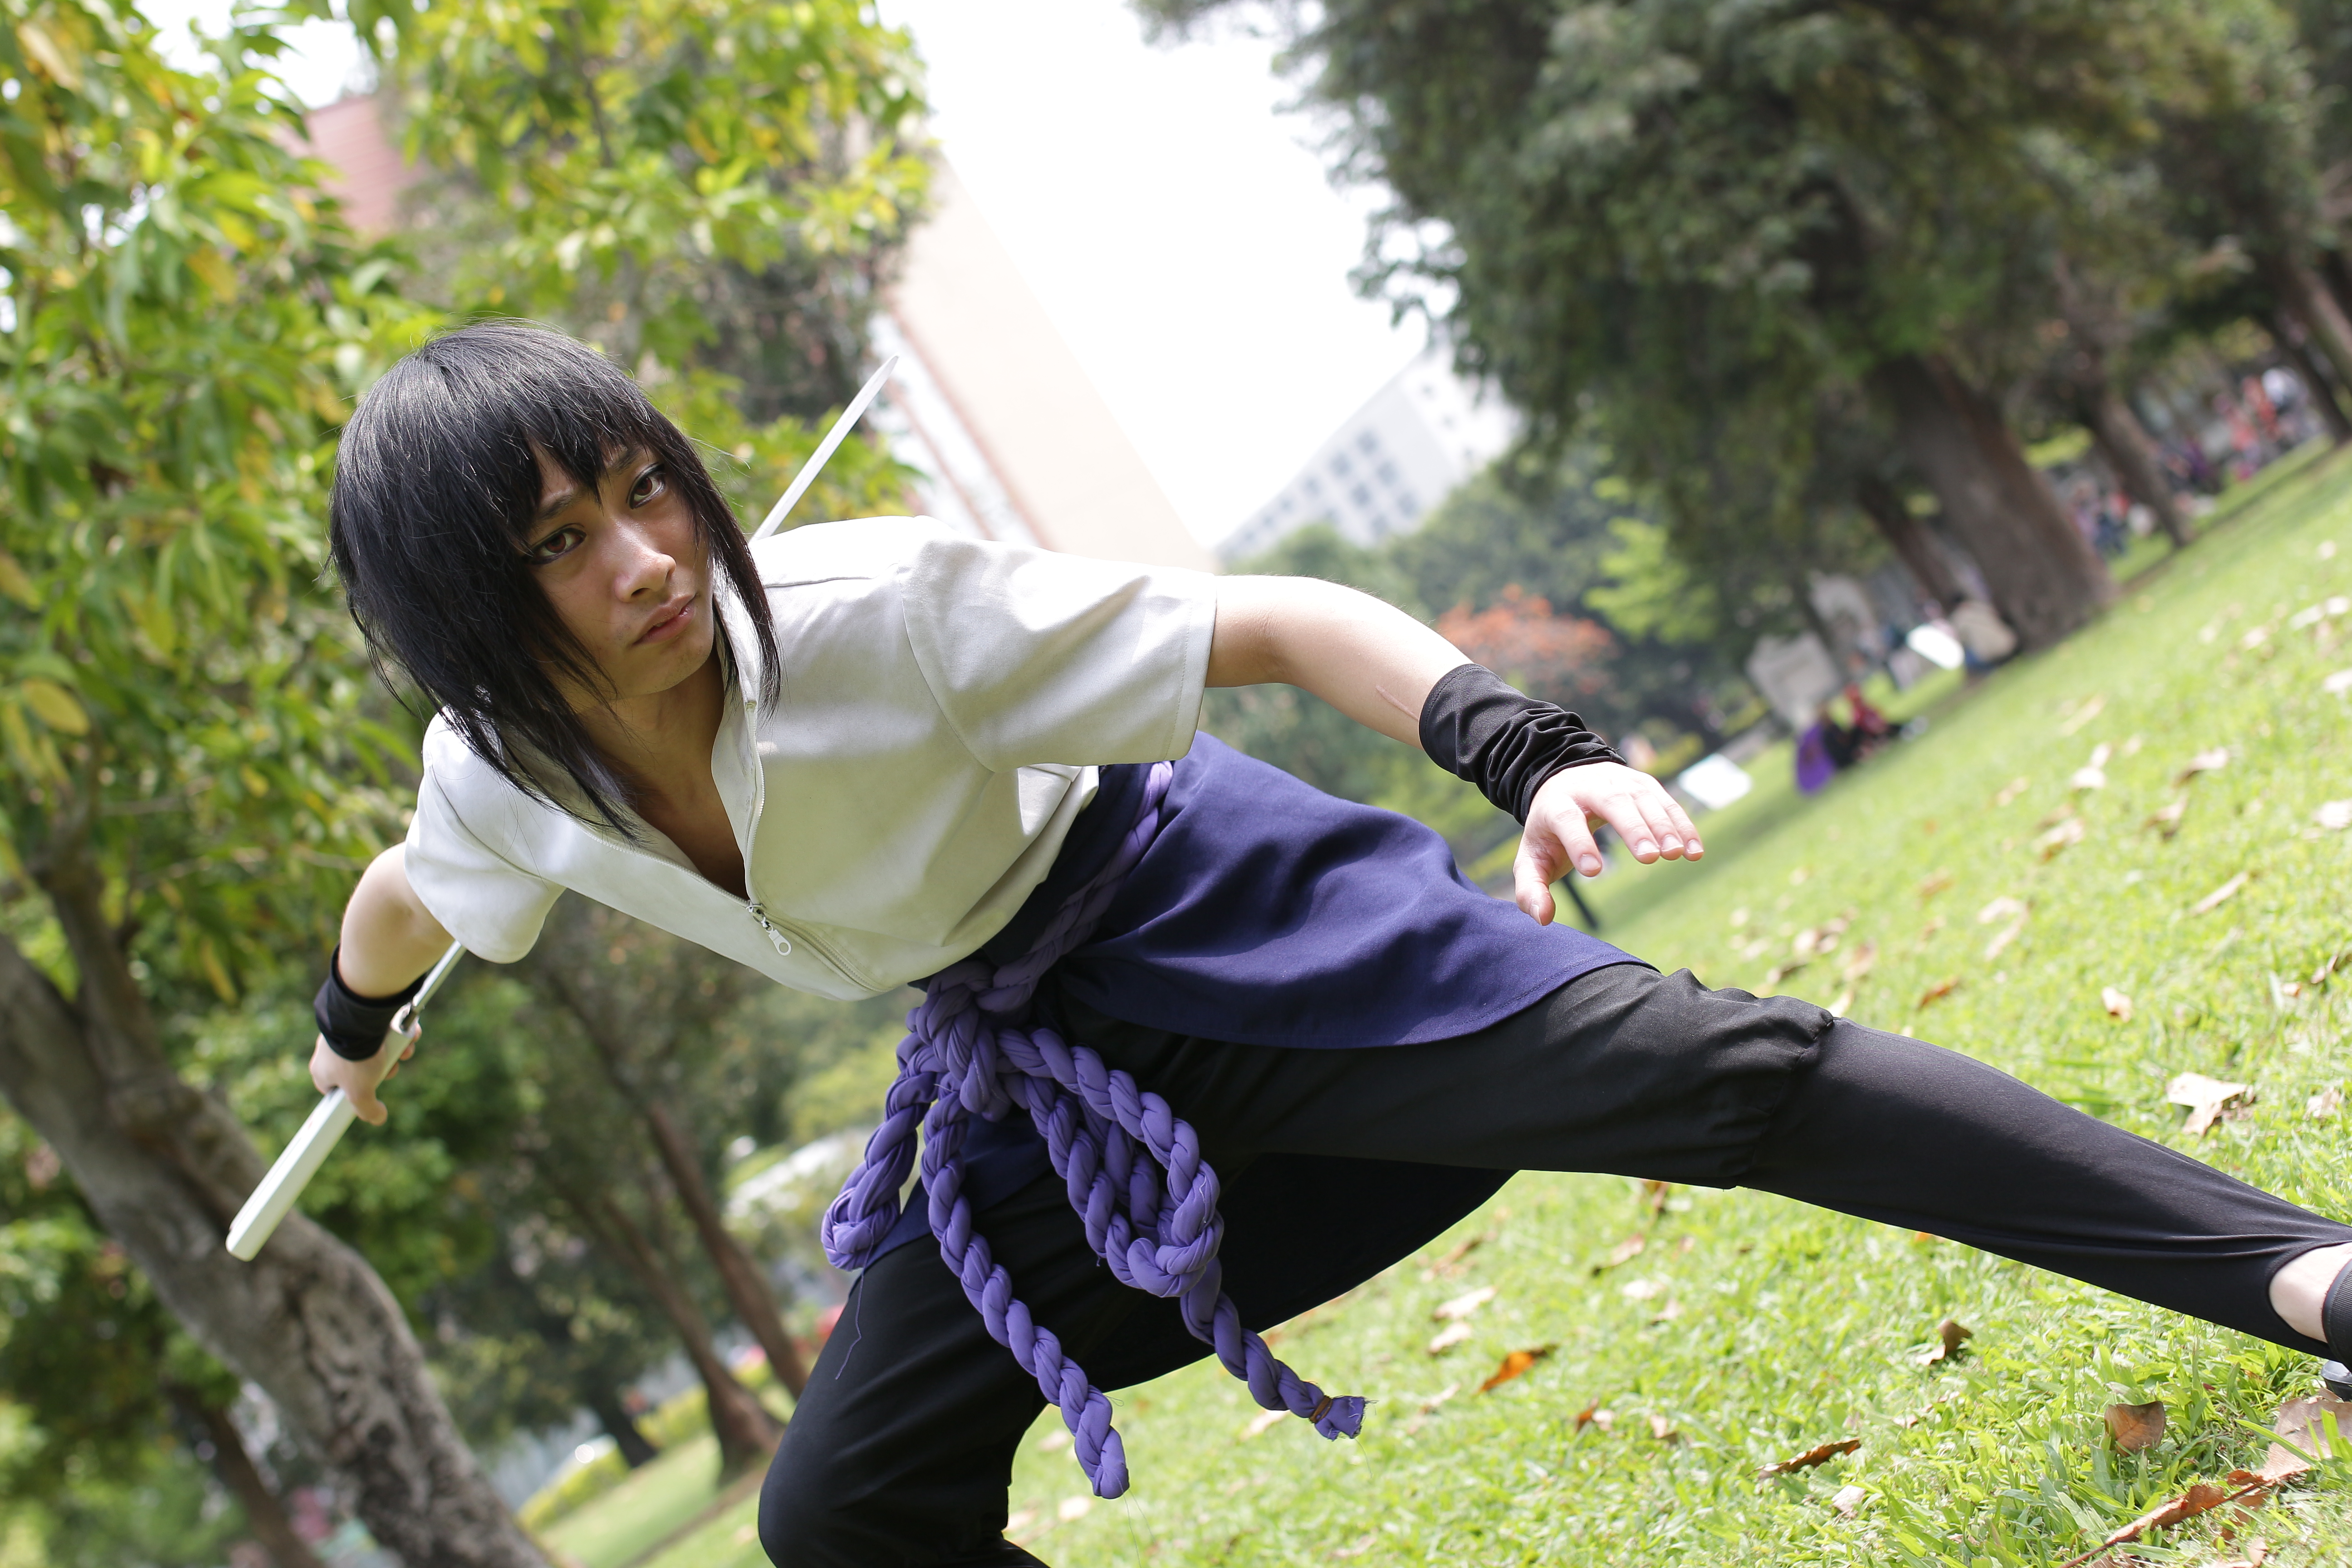 sasuke uchiha shippuden cosplay